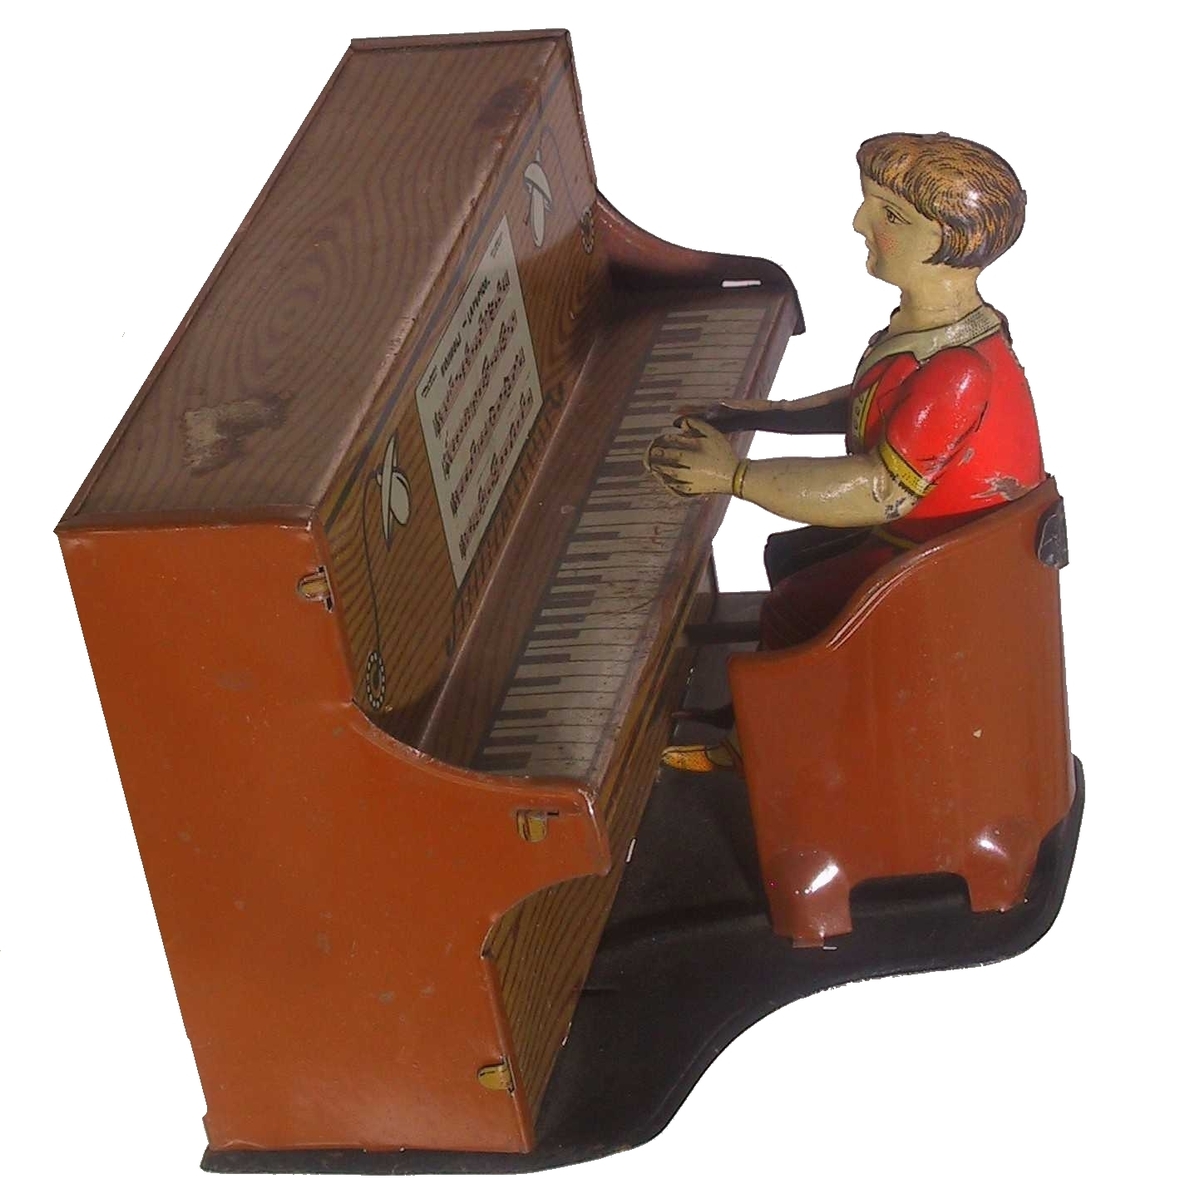 Piano med stol foran, i denne sitter en pianist. På baksiden av pianoet en sveiv som lager lyd og beveger pianisten.